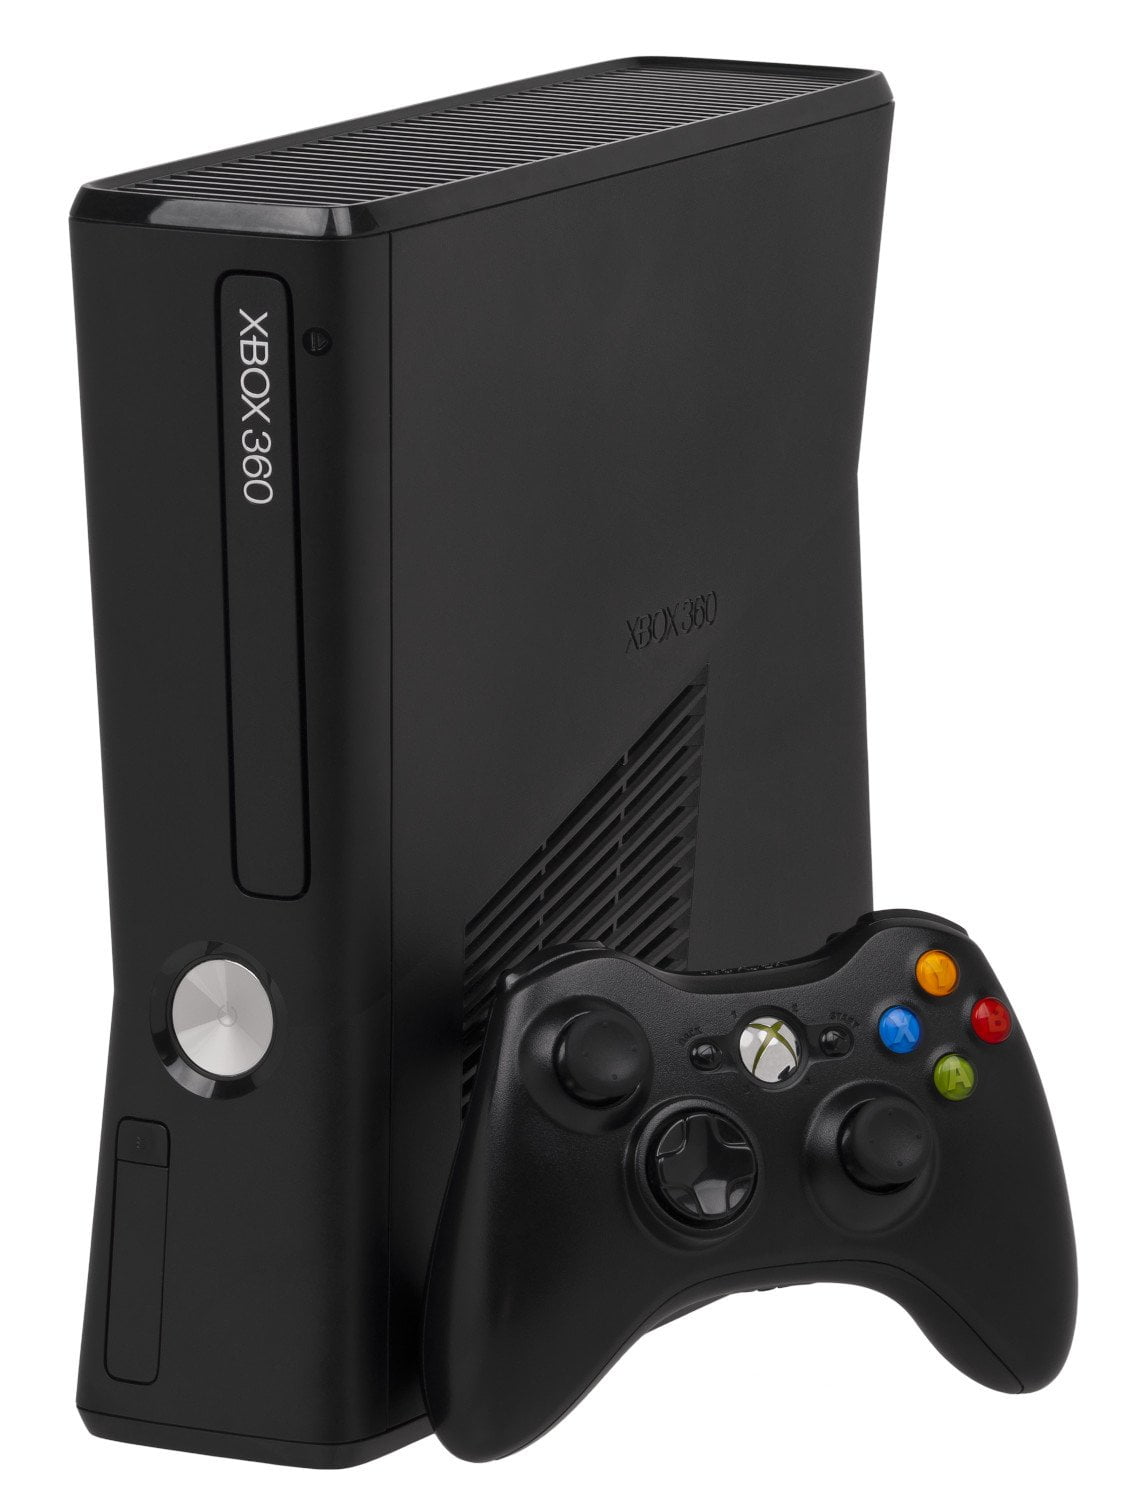 Microsoft Xbox 360 E 250GB Video Gaming Console Black With HDMI